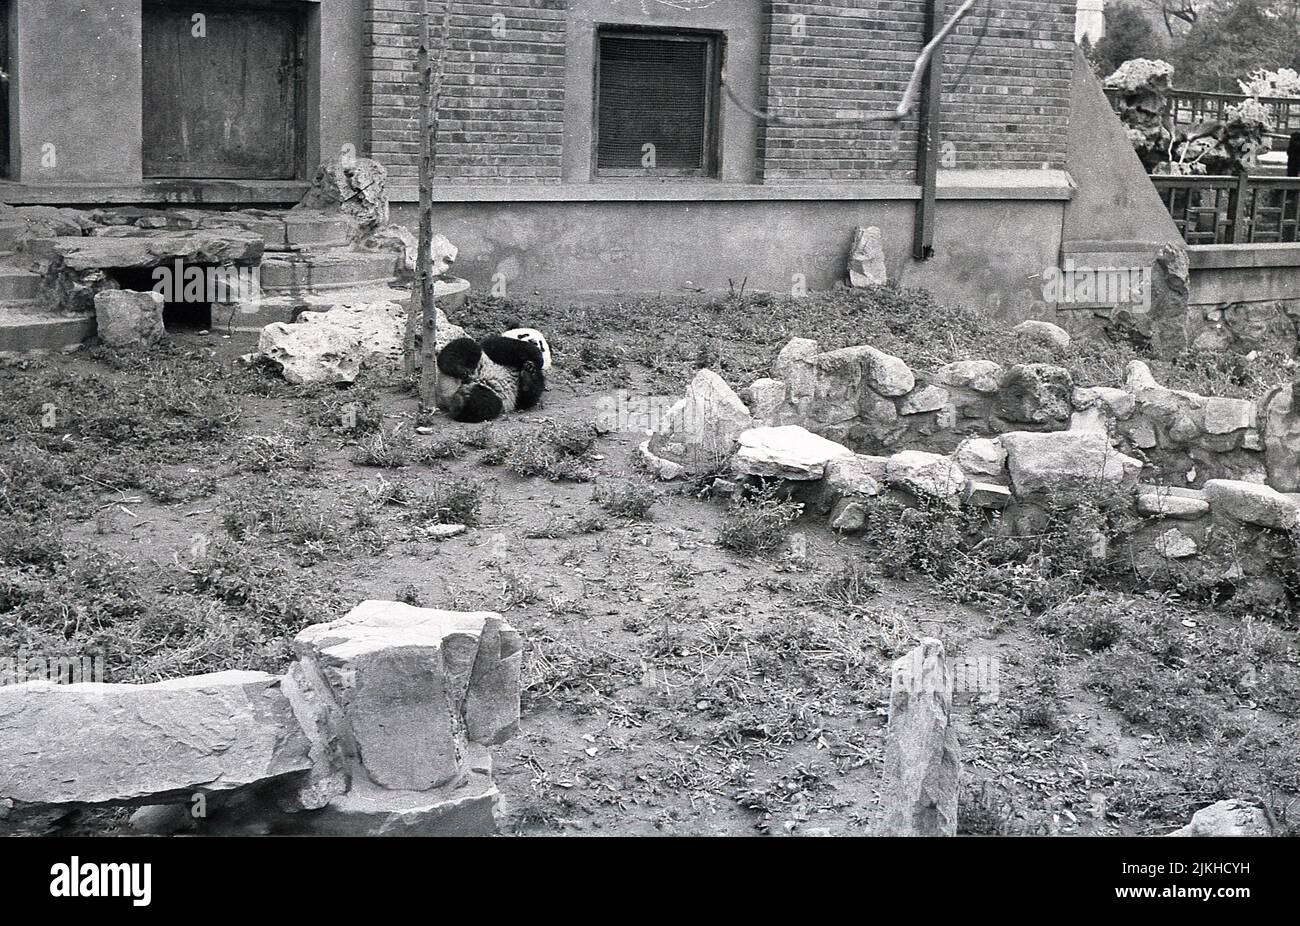 1963, historisch, London Zoo, Panda in Gehege. Chi Chi, eine riesige weibliche Panda aus Sichuan, China, kam 1958 in den Zoo und wurde zu einer der Hauptattraktionen des Zoos. Stockfoto